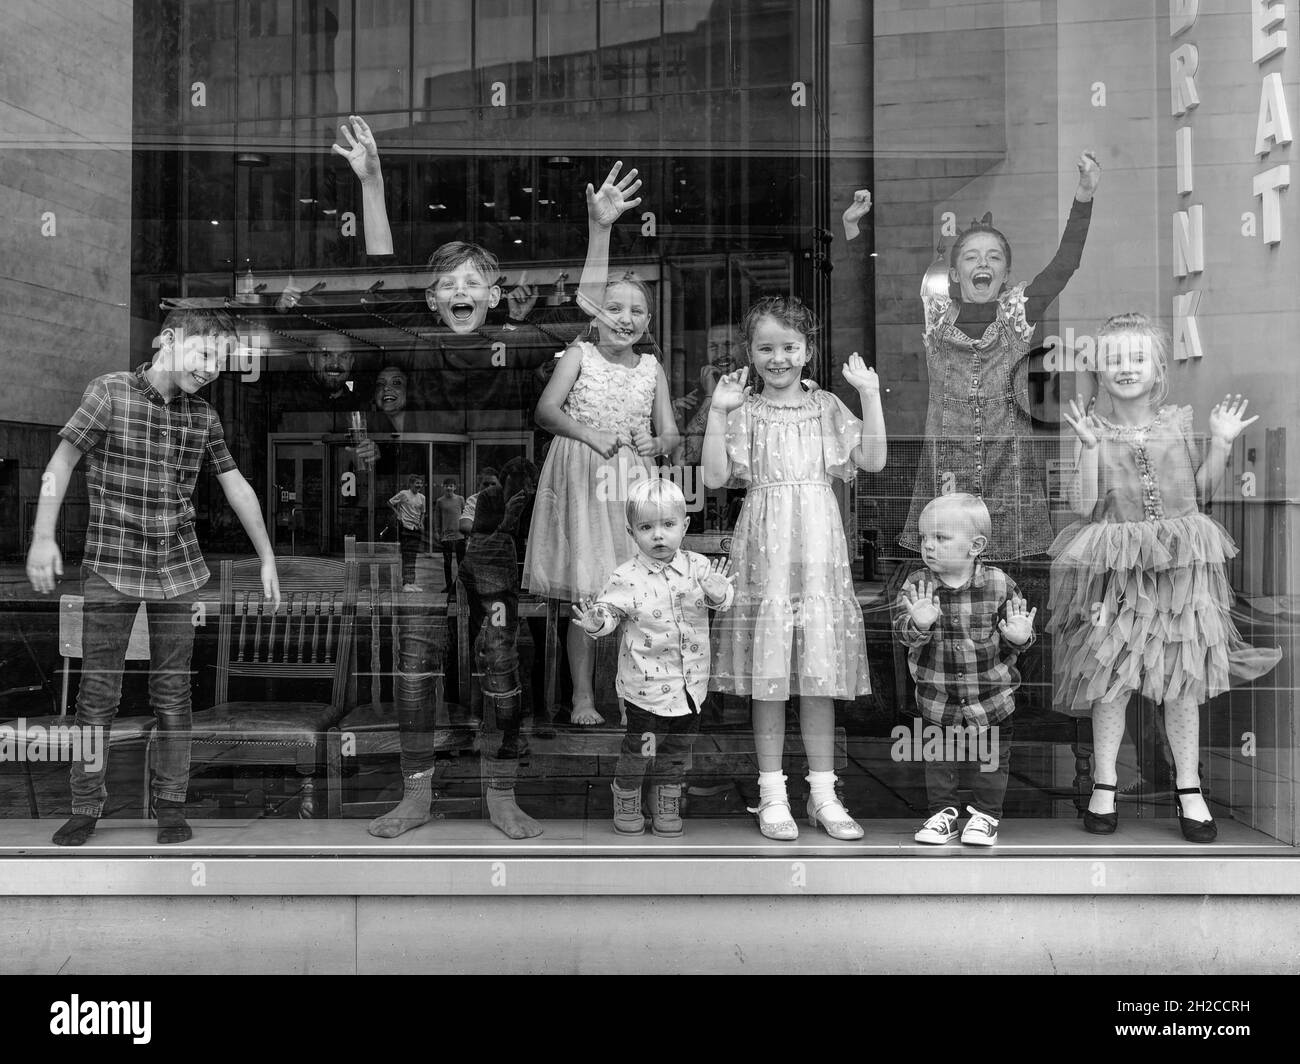 Londra, Greater London, Inghilterra, ottobre 09 2021: Un gruppo di bambini dietro un sorriso finestra, un'onda e uno fa una danza robot. Immagine monocromatica. Foto Stock